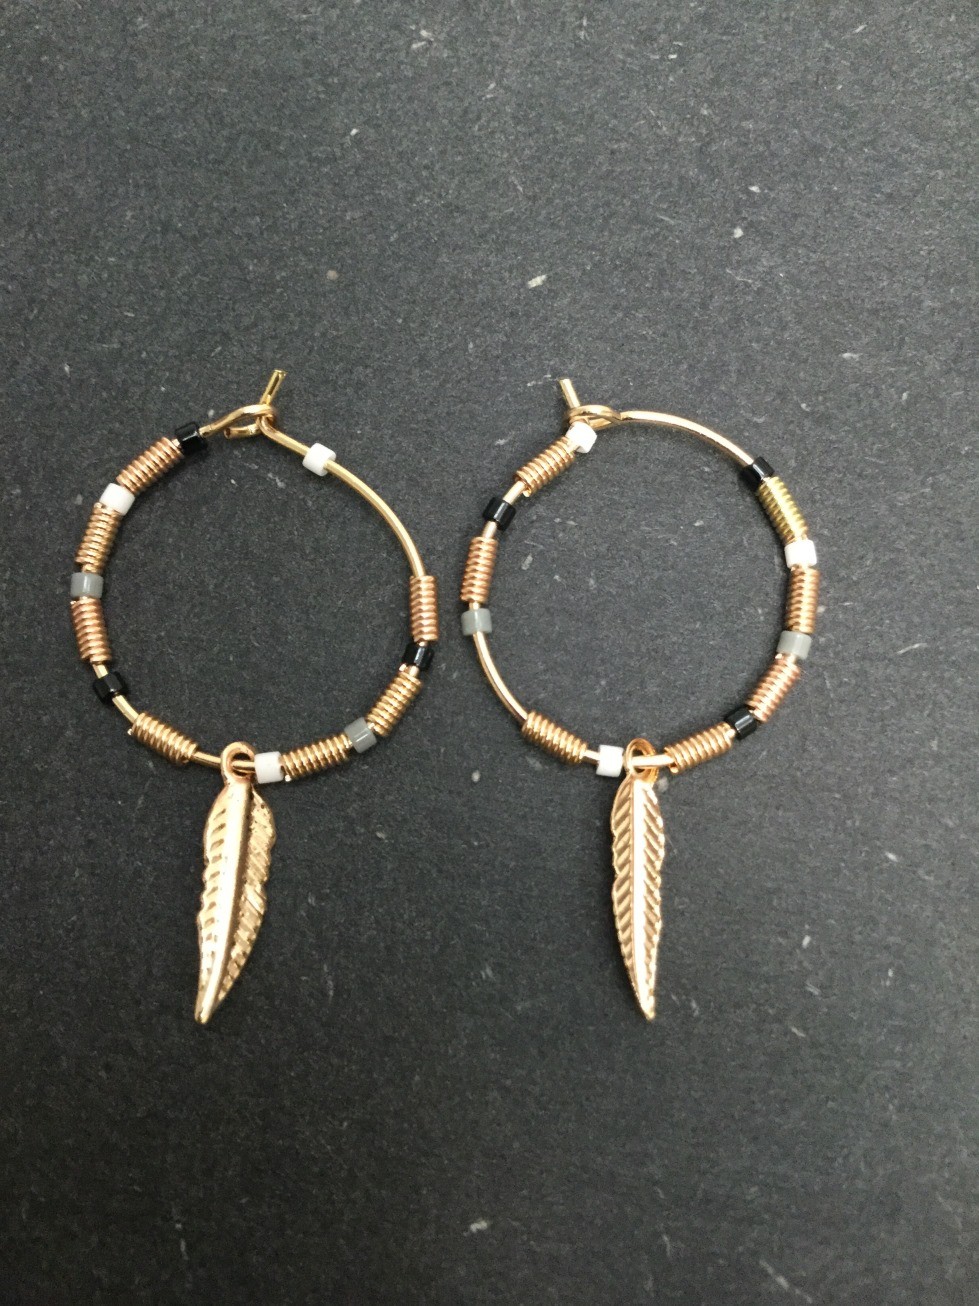 Boucles d'oreilles - Anneau avec perles colorées et plume métallique.